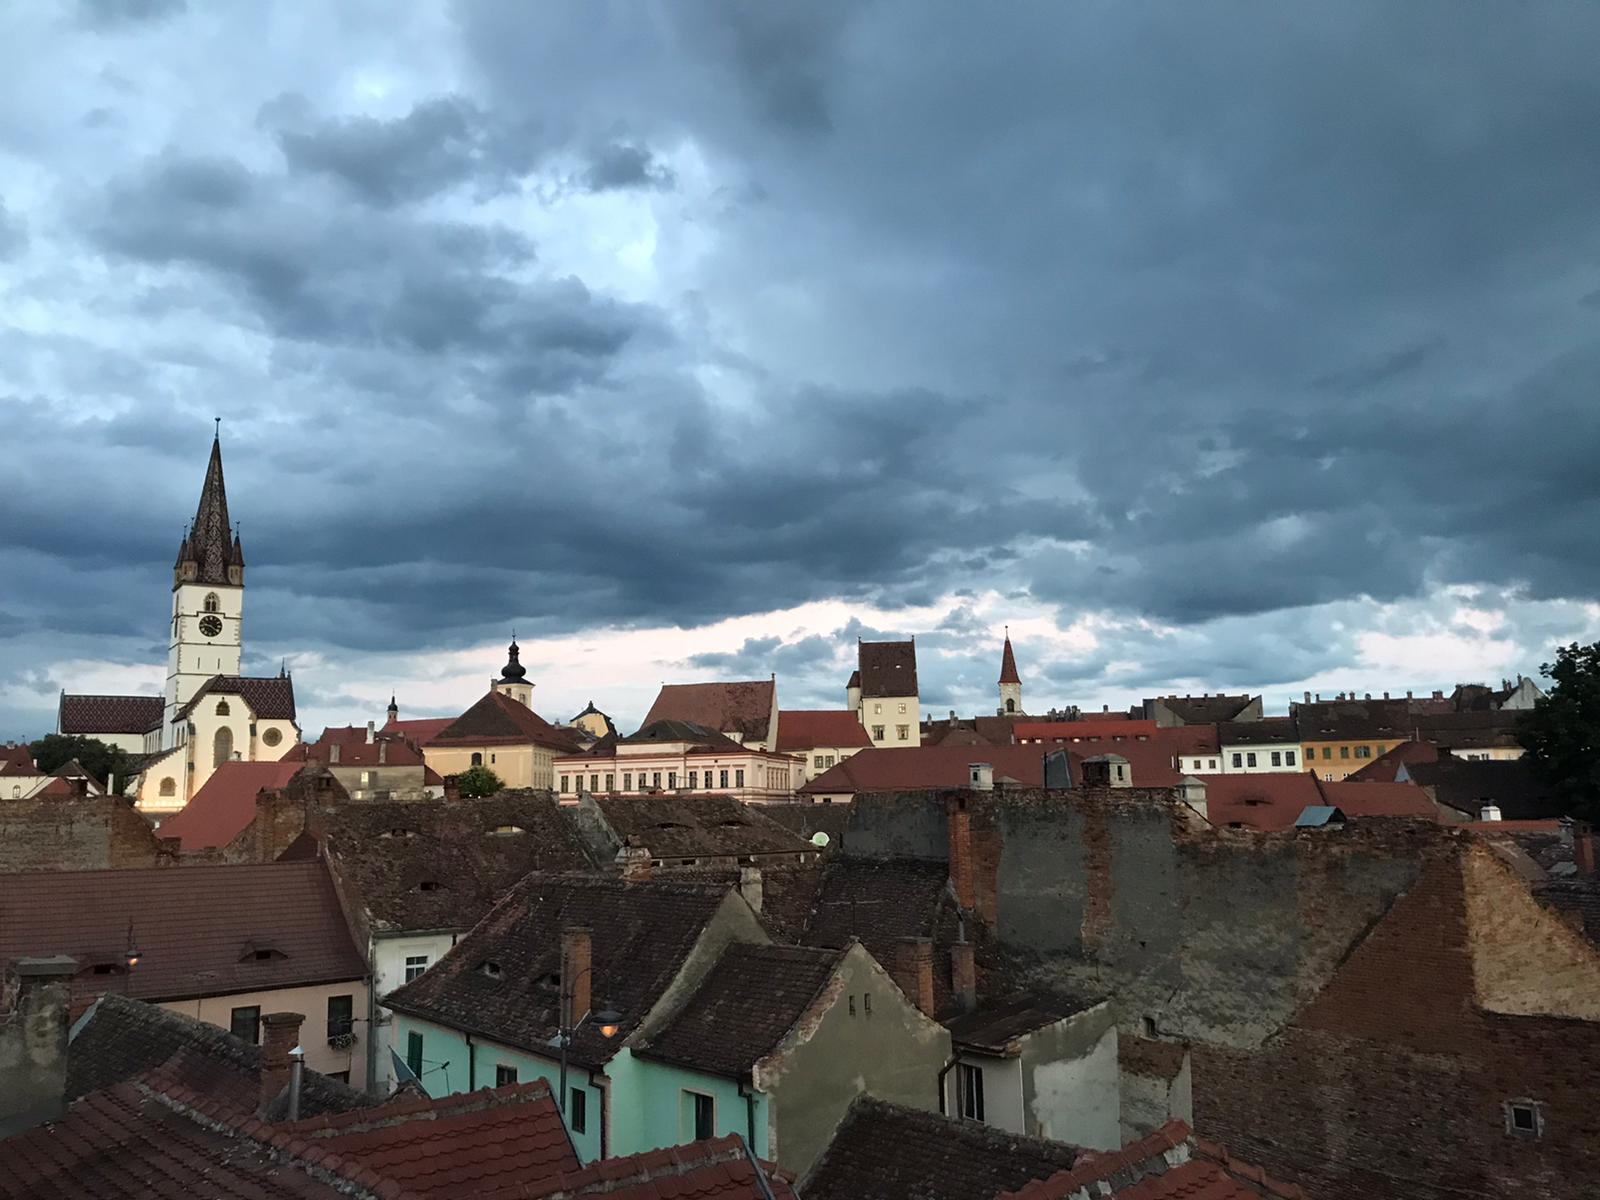 Județul Sibiu se află în cod galben. Sunt anunțate averse torențiale, descărcări electrice și vijelii